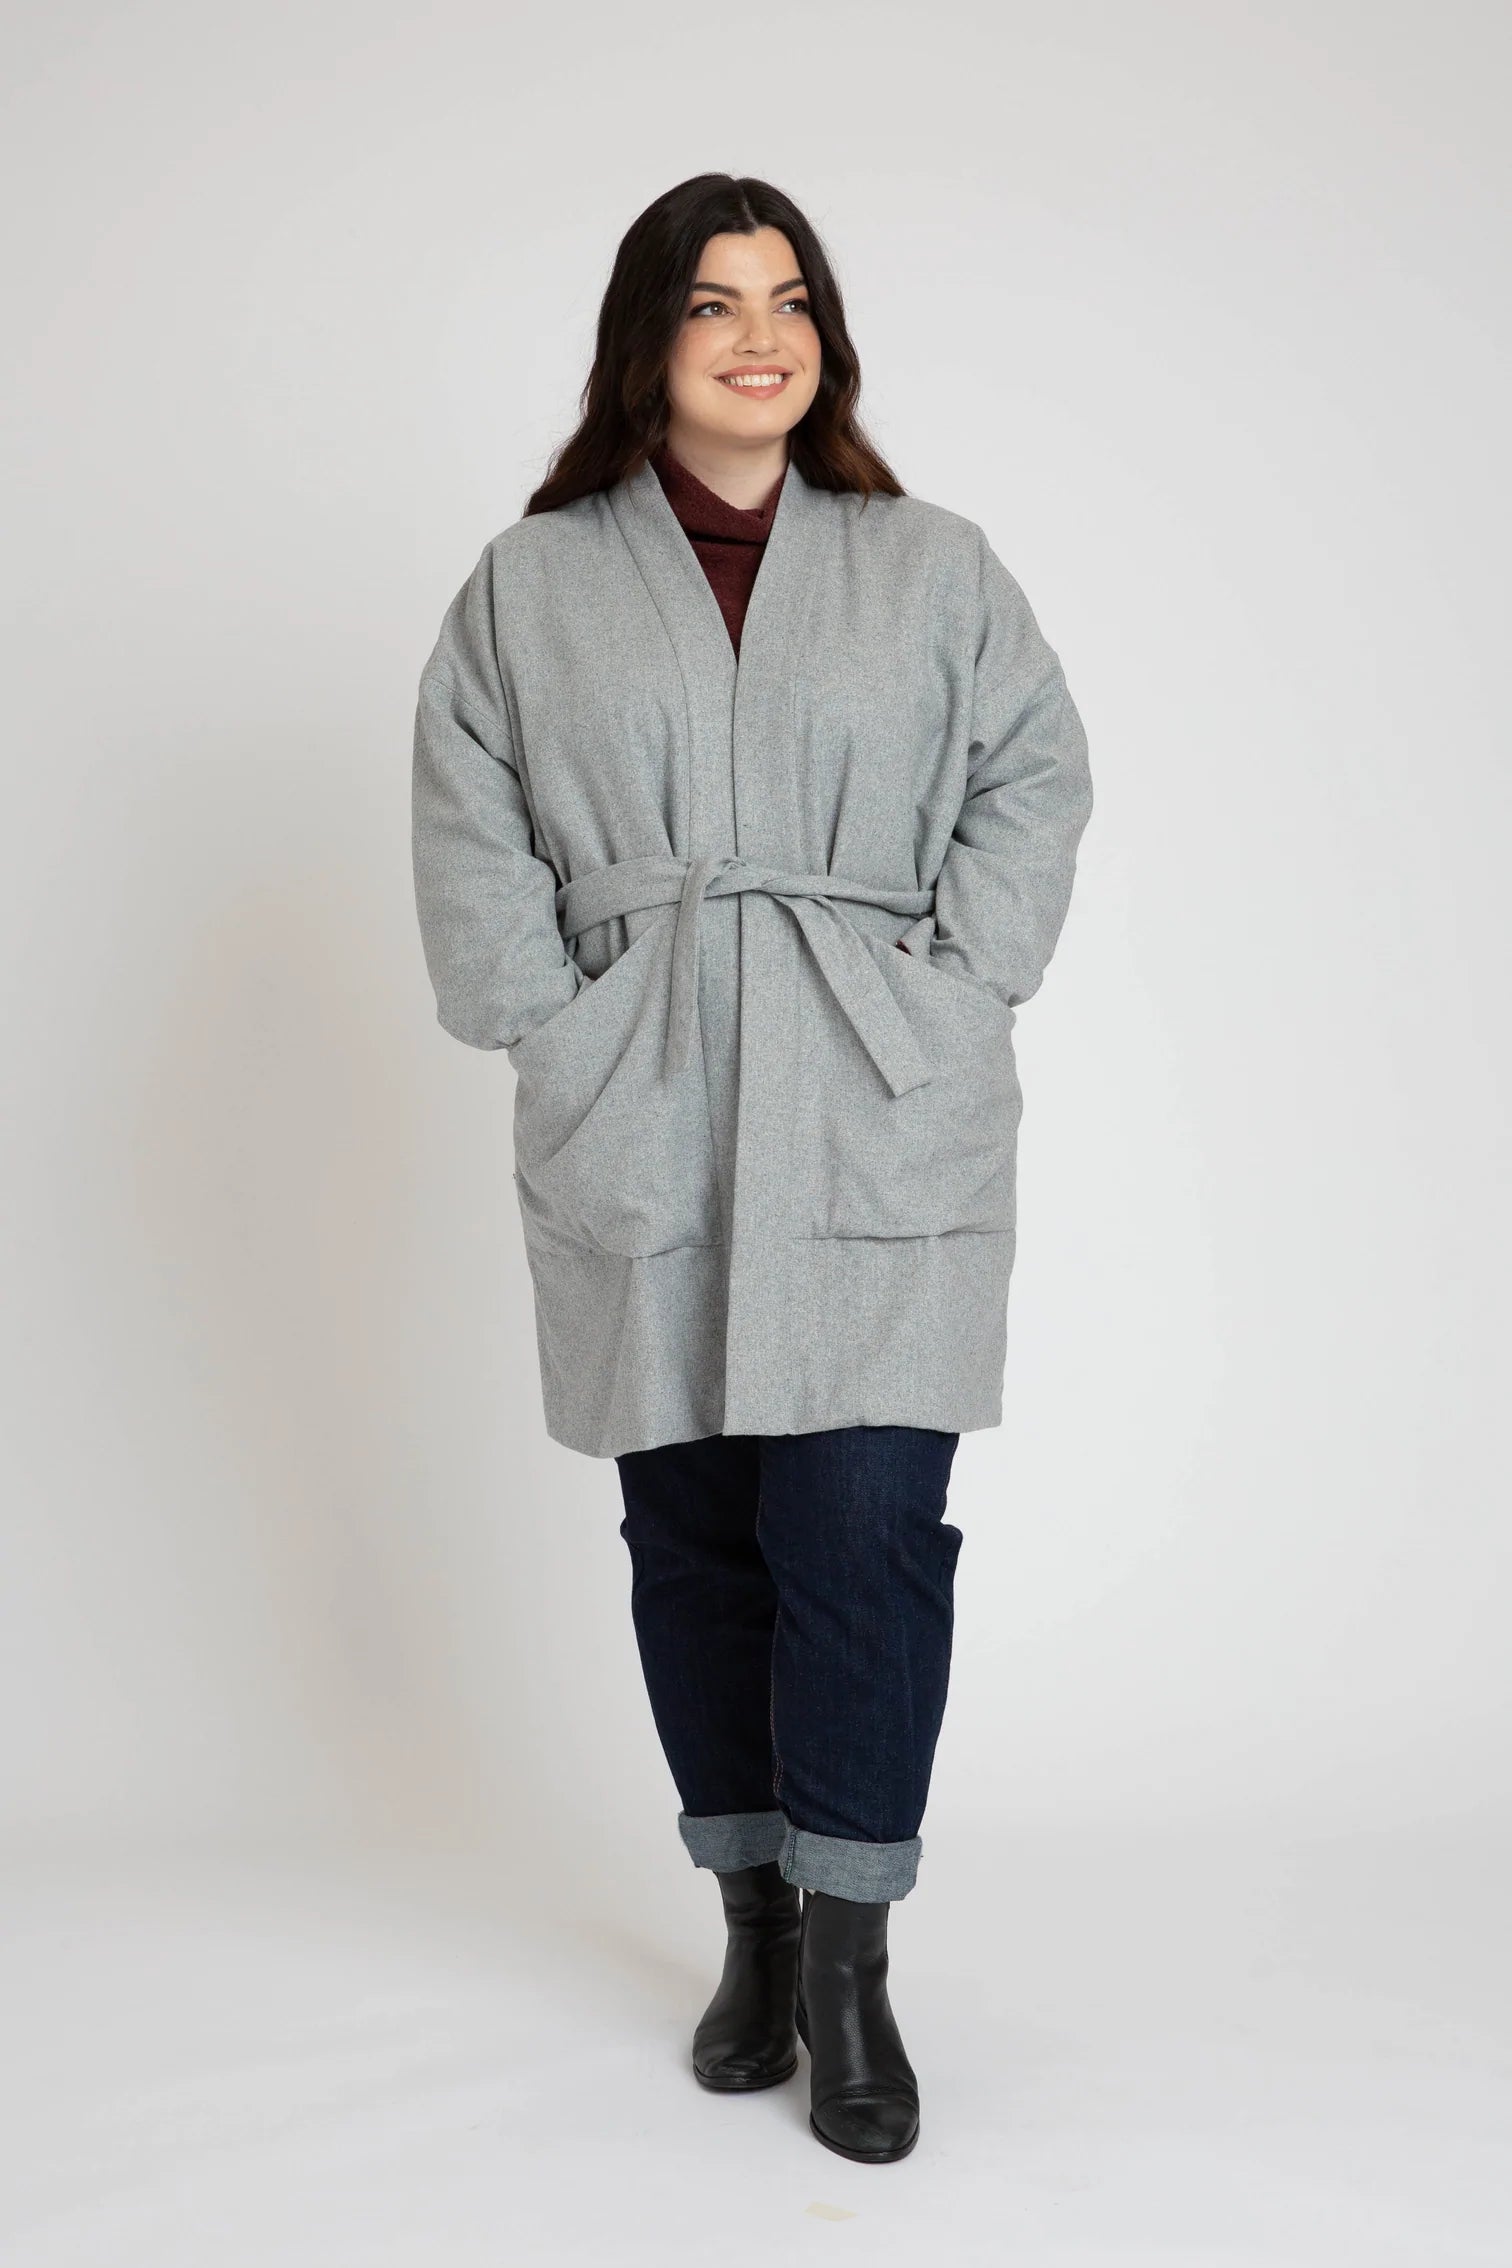 Hovea Jacket & Coat, Curve Range - Megan Nielsen